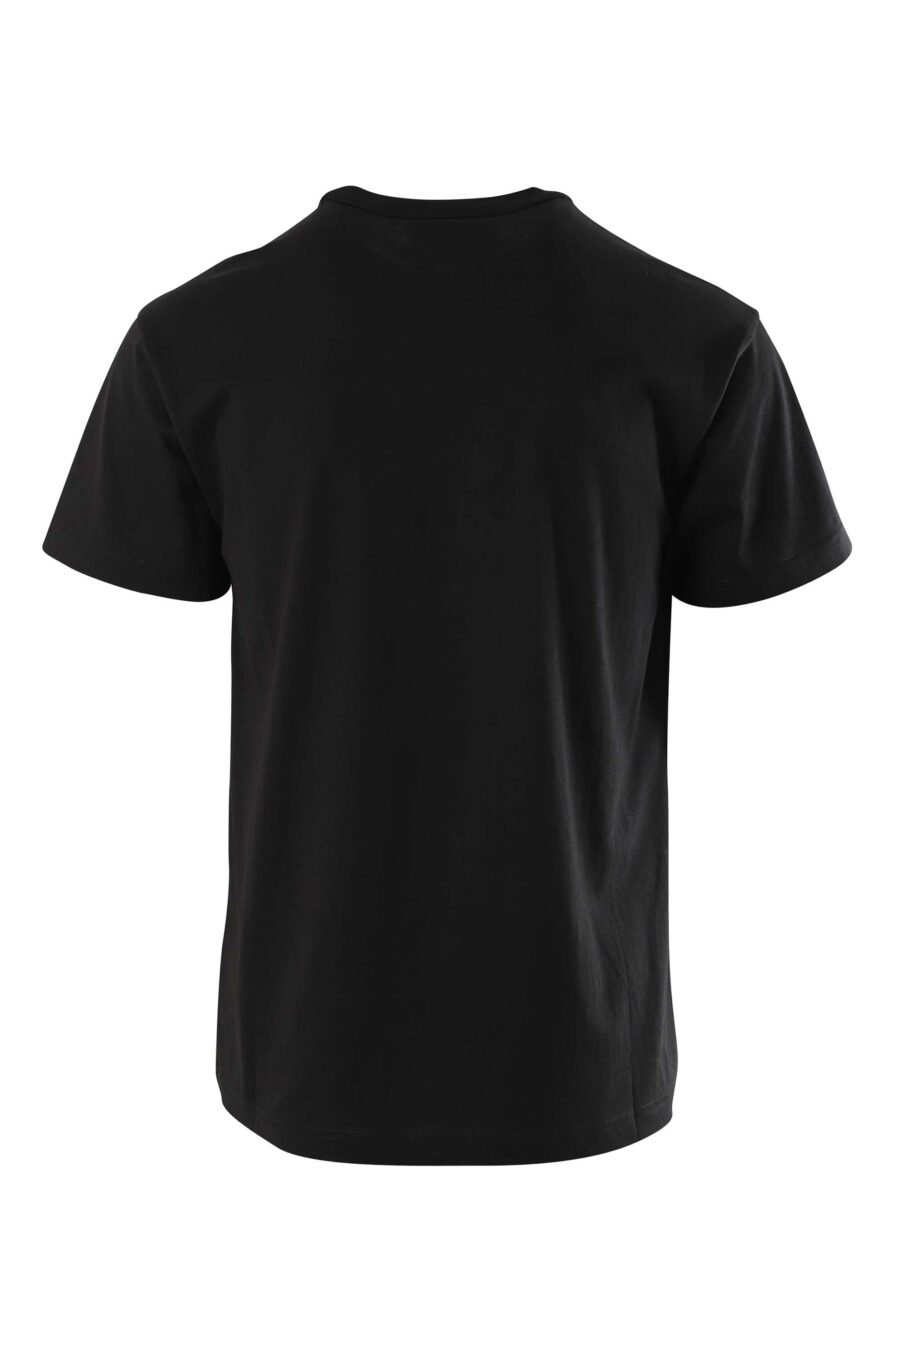 Schwarzes T-Shirt mit kontrastierendem Maxilogo - 8052019235449 2